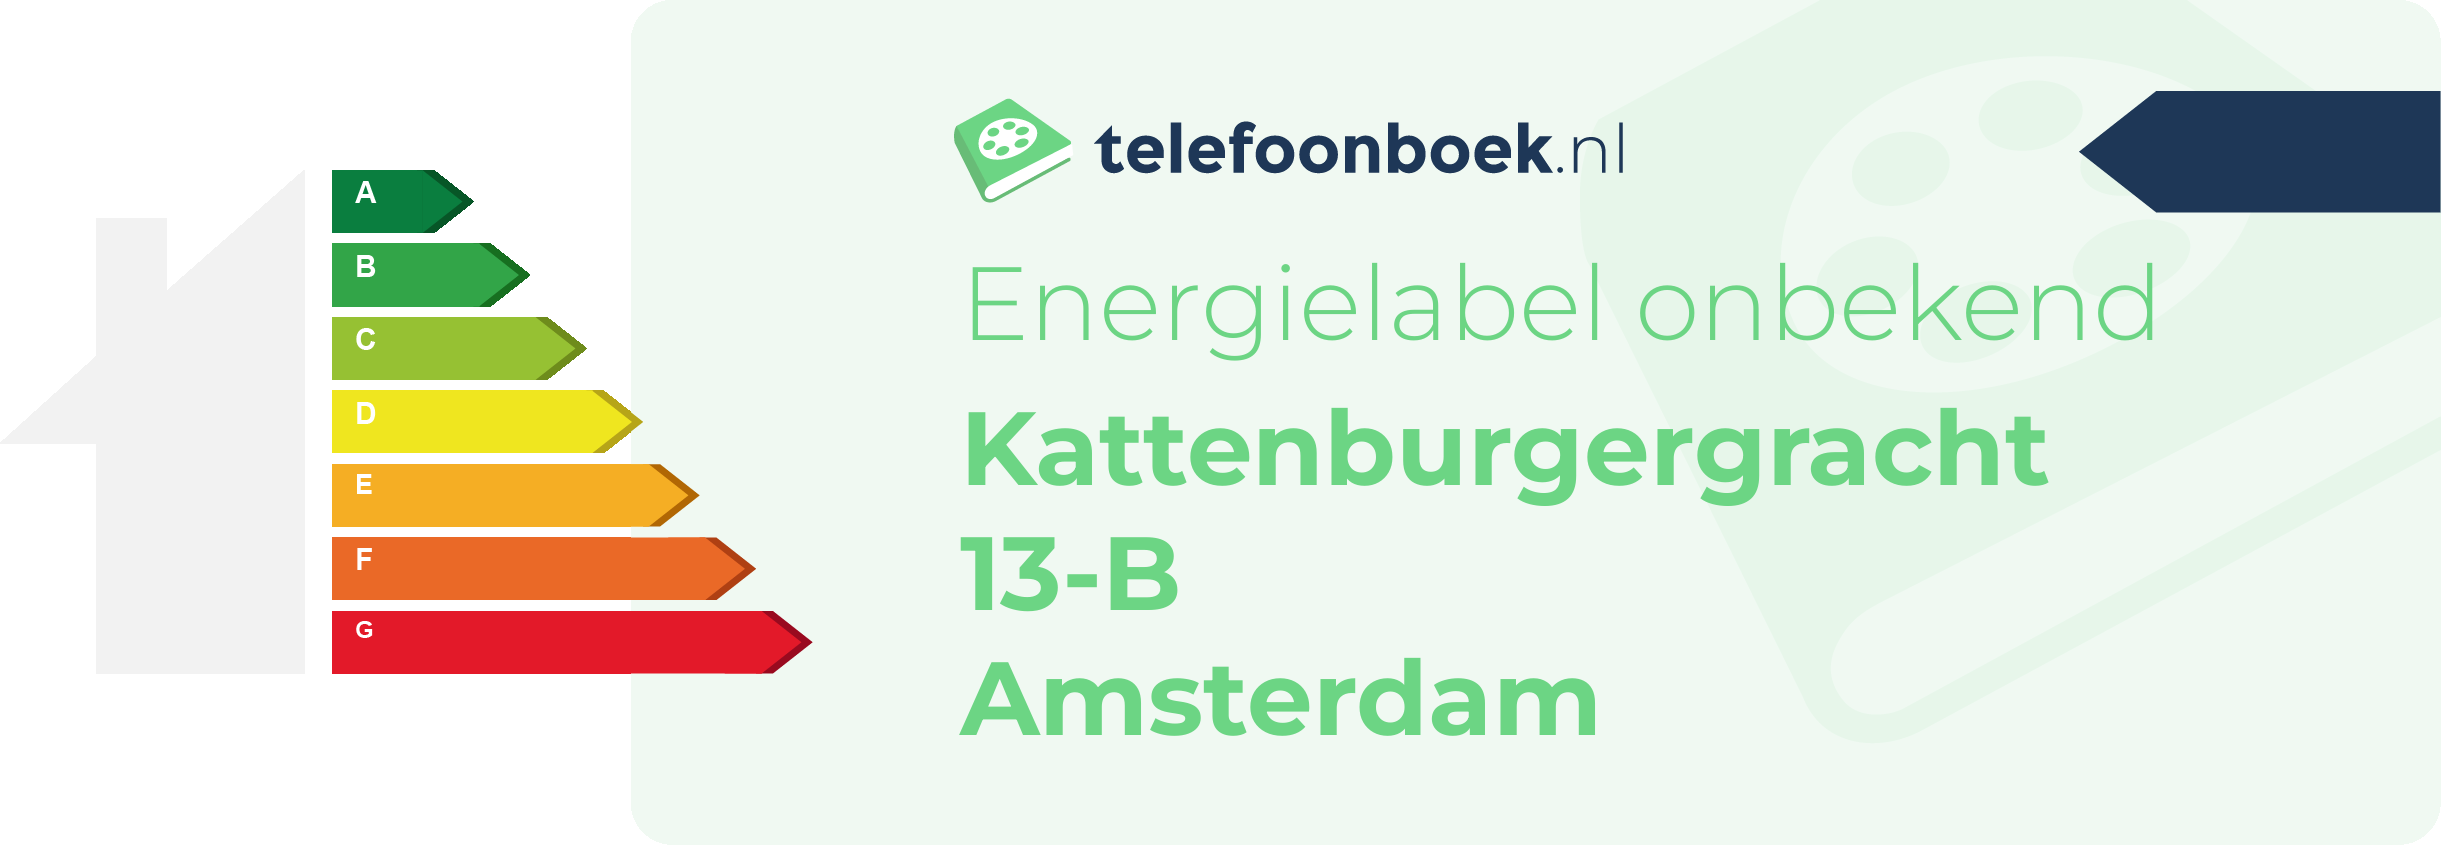 Energielabel Kattenburgergracht 13-B Amsterdam